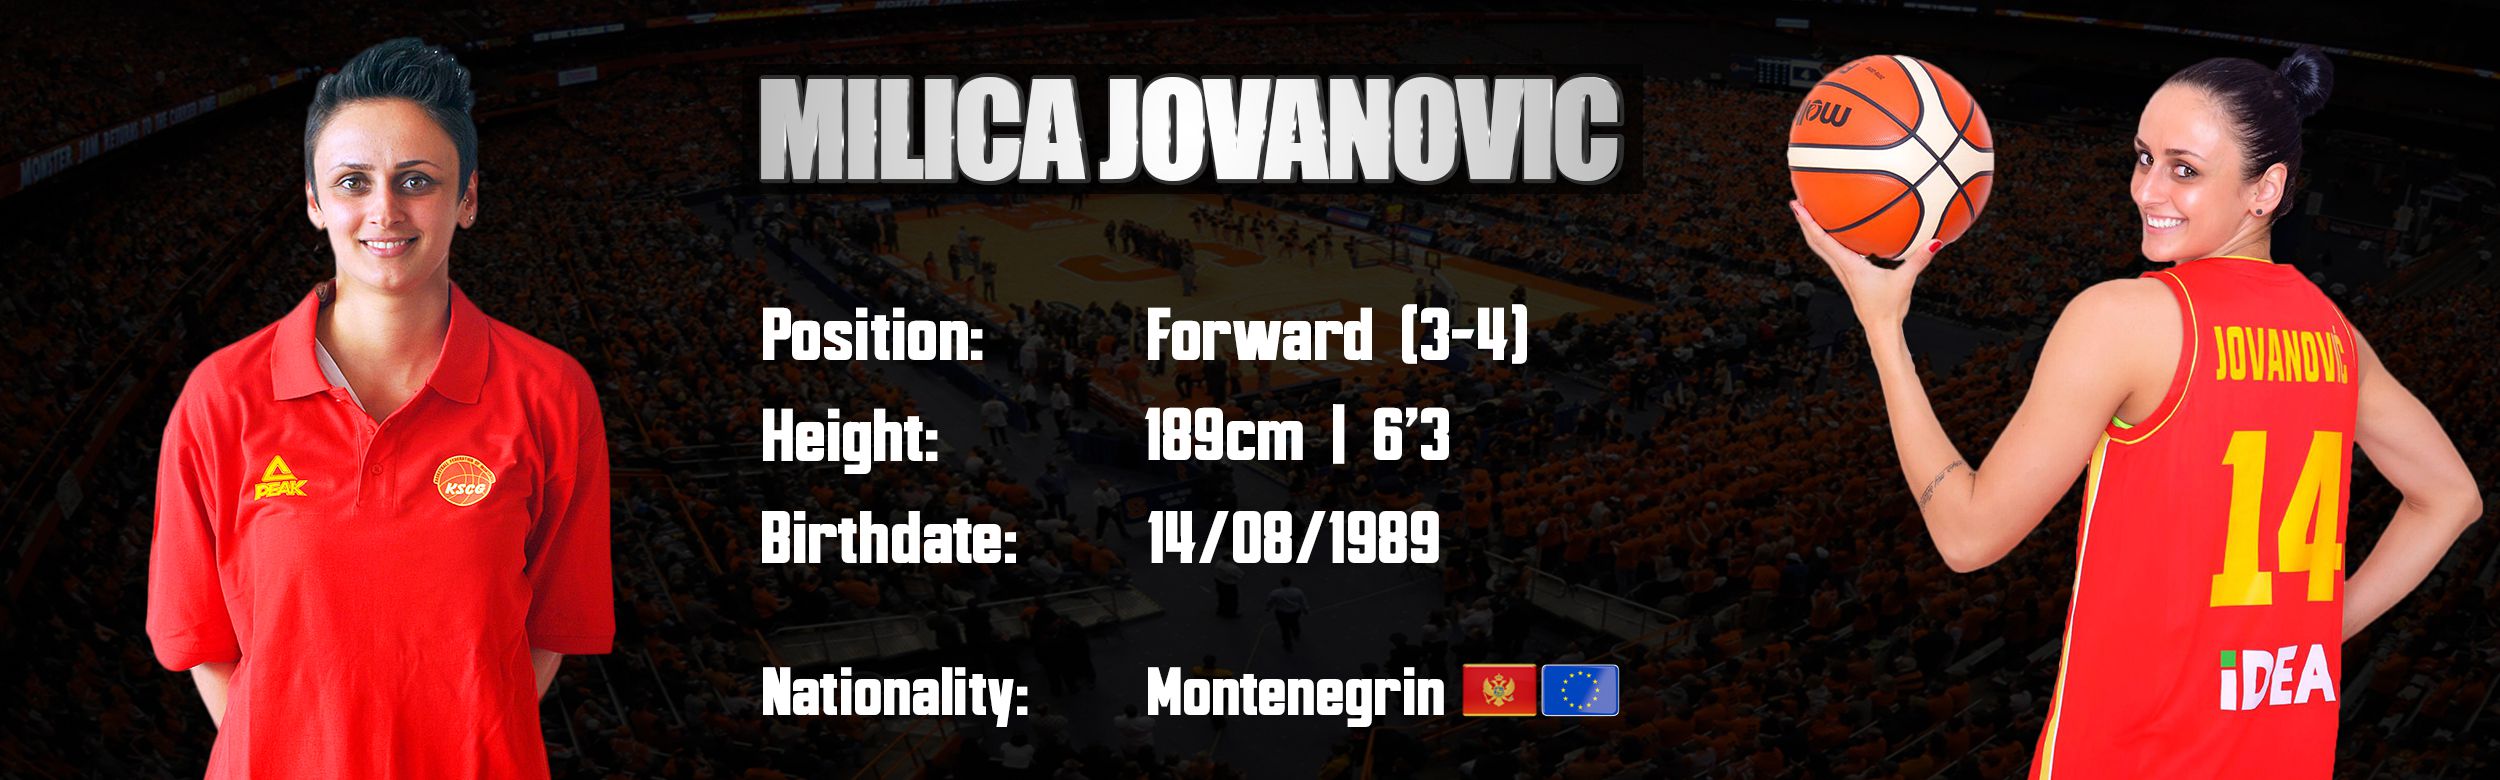 Milica Jovanovic